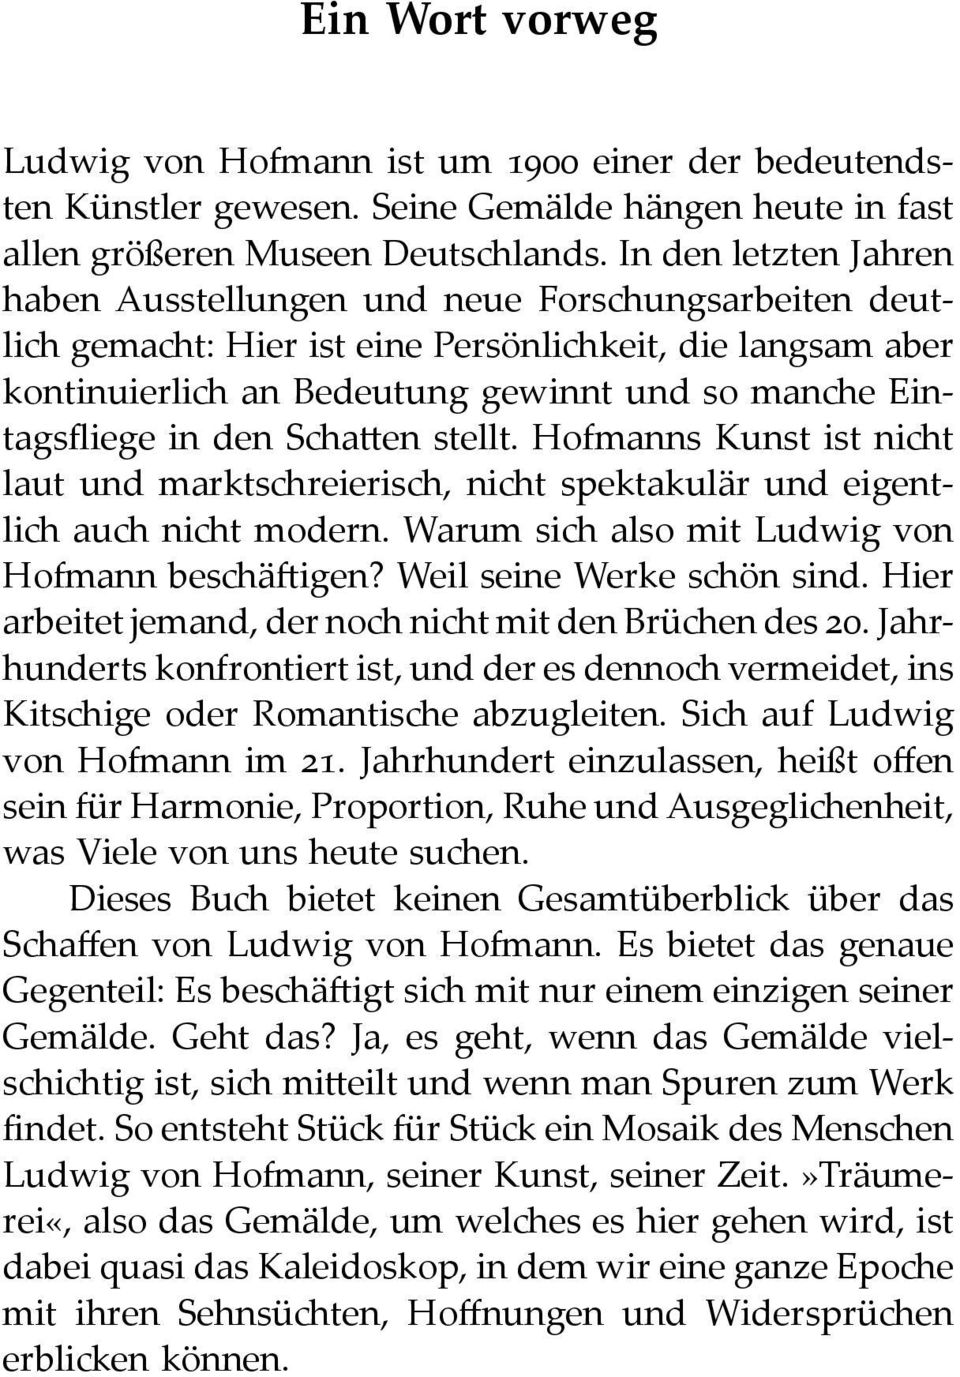 in den Schatten stellt. Hofmanns Kunst ist nicht laut und marktschreierisch, nicht spektakulär und eigentlich auch nicht modern. Warum sich also mit Ludwig von Hofmann beschäftigen?